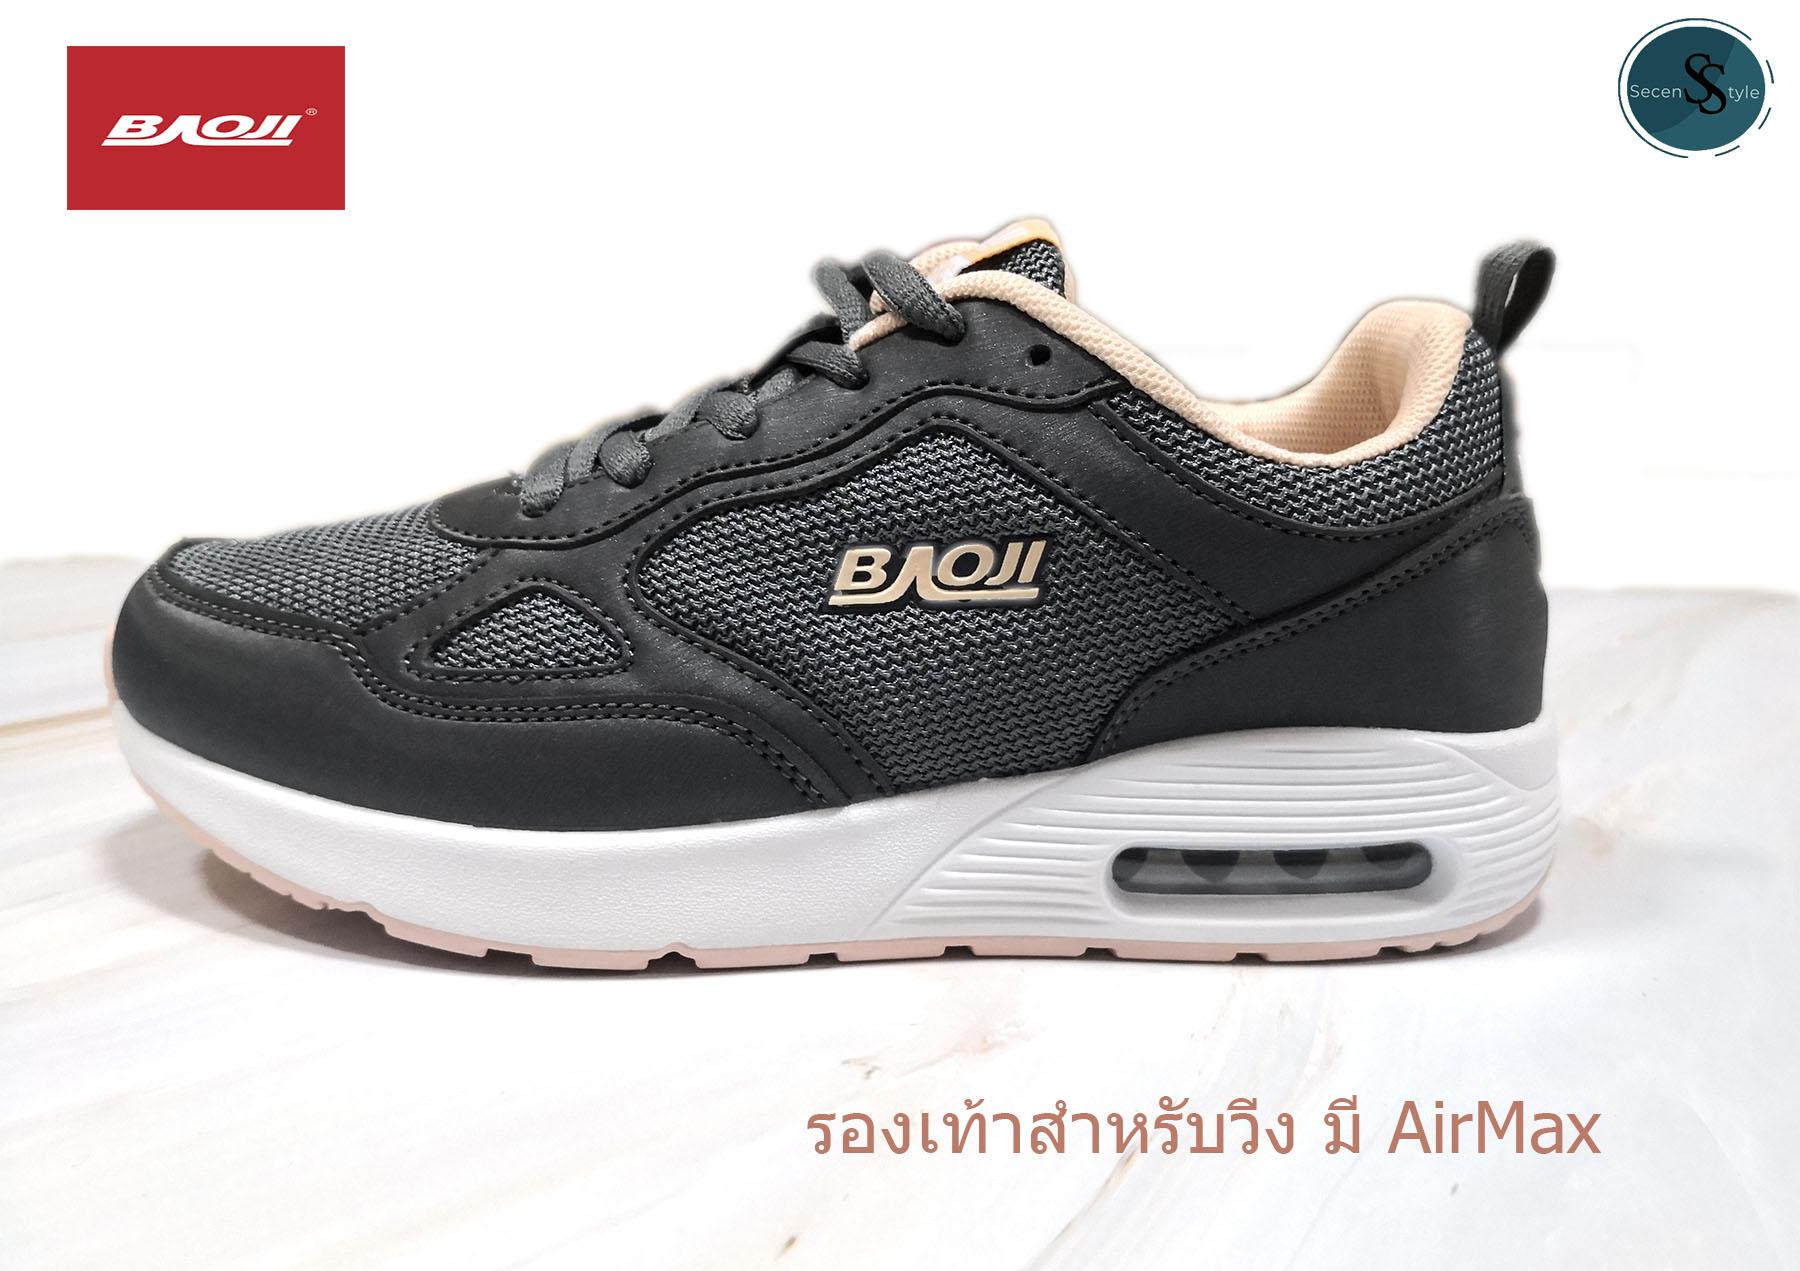 Baoji แท้!!! รุ่น BJW-570 ***สำหรับผู้หญิง***รองเท้ากีฬา รองเท้าวิ่ง ## มี Air Max # มี 3 สี (สีม่วง/สีดำ/สีเทา)